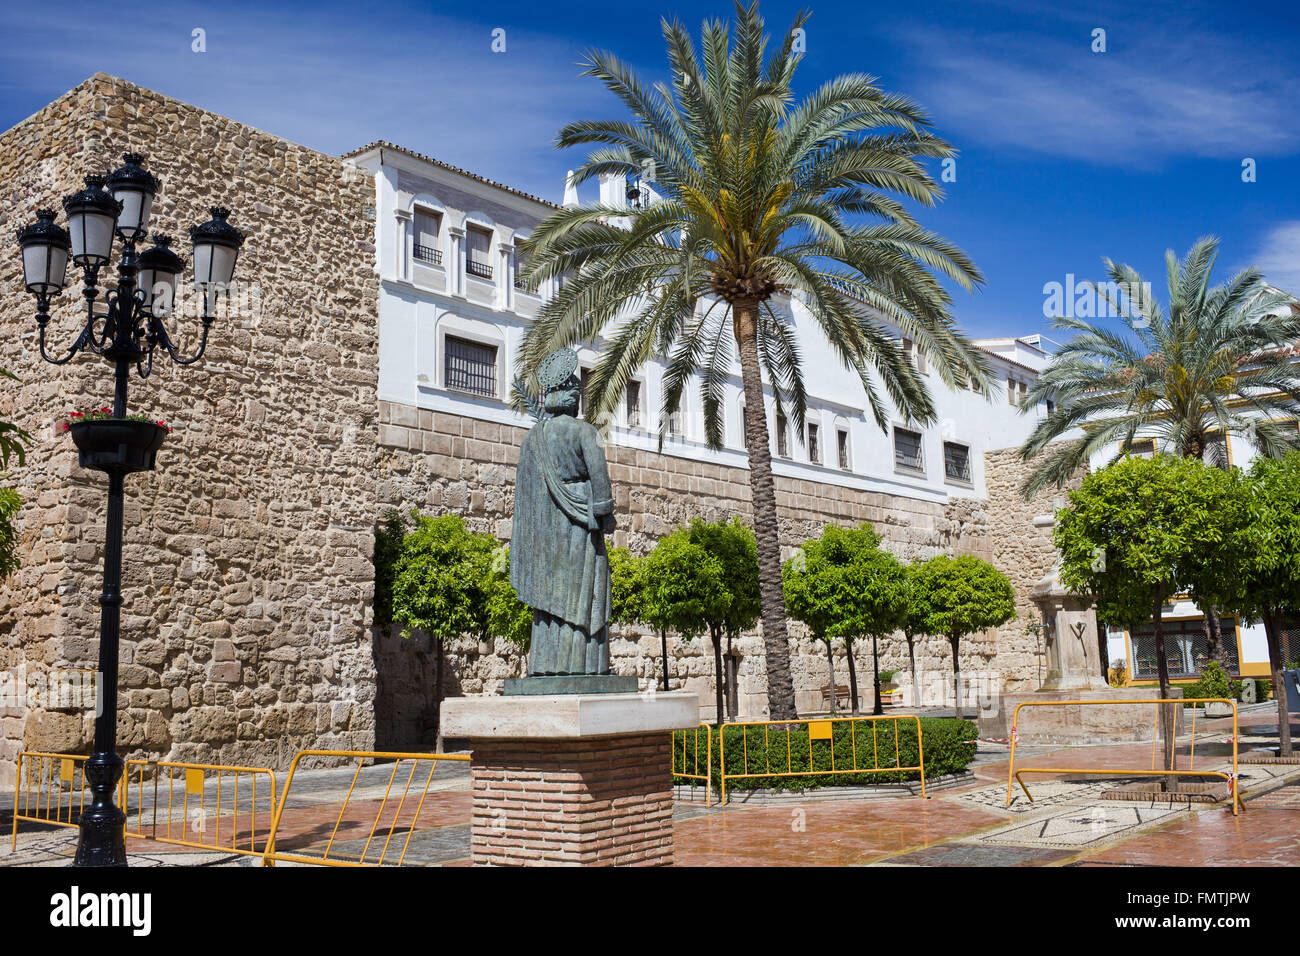 Church Square - Plaza de la Iglesia in the Old Town of Marbella, Spain, Andalusia region Stock Photo